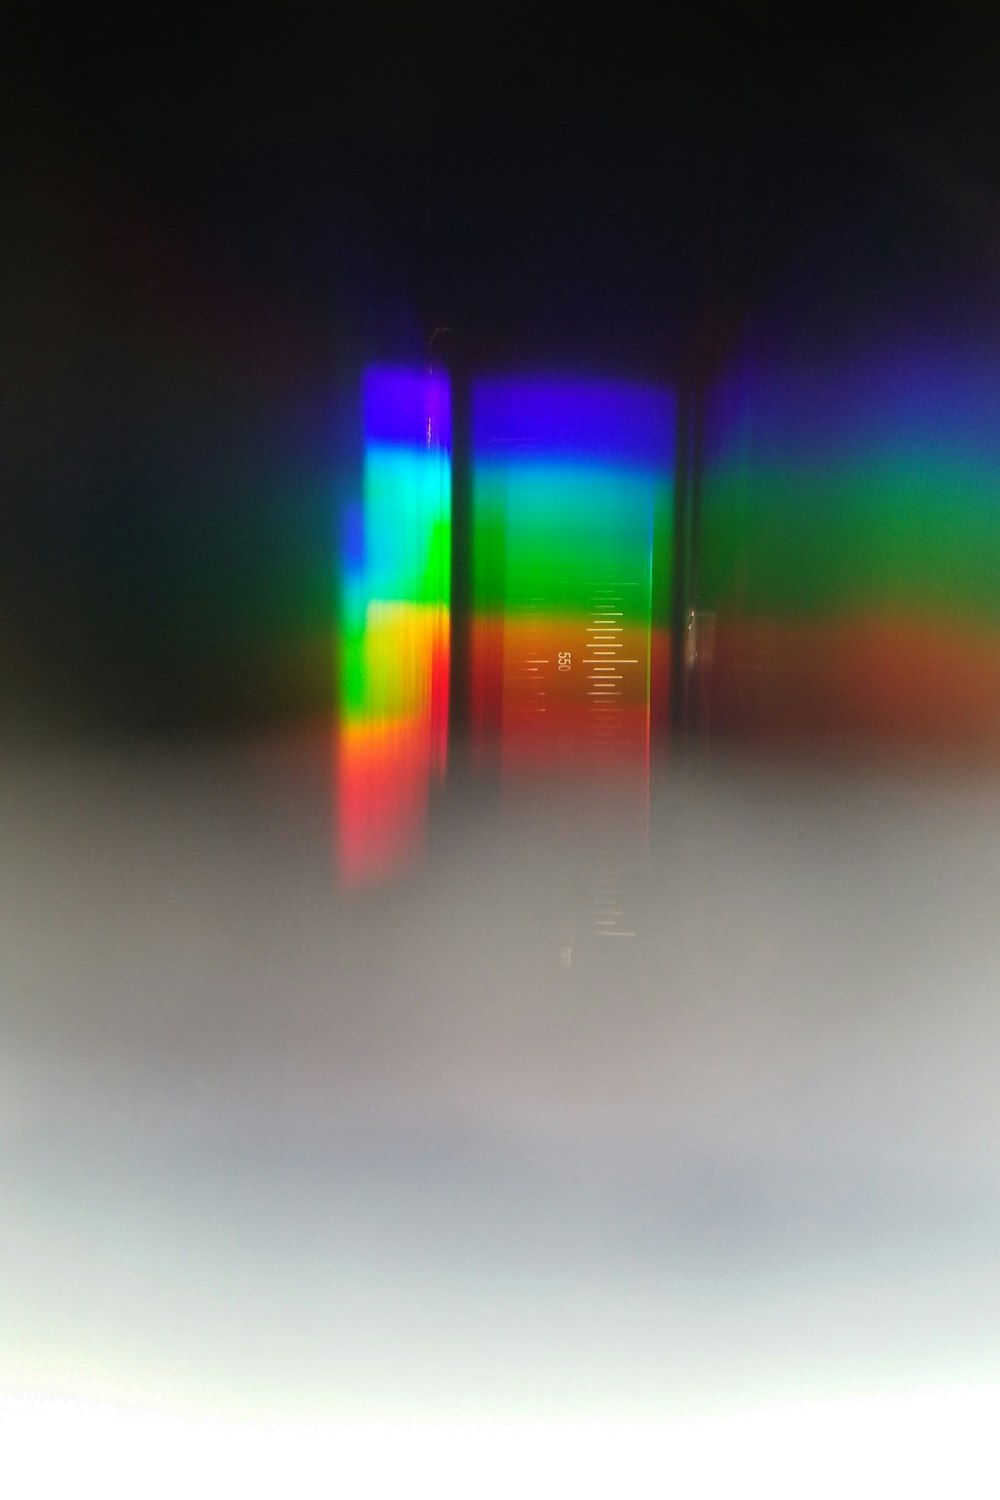 une photo floue d’un téléphone portable avec un écran coloré